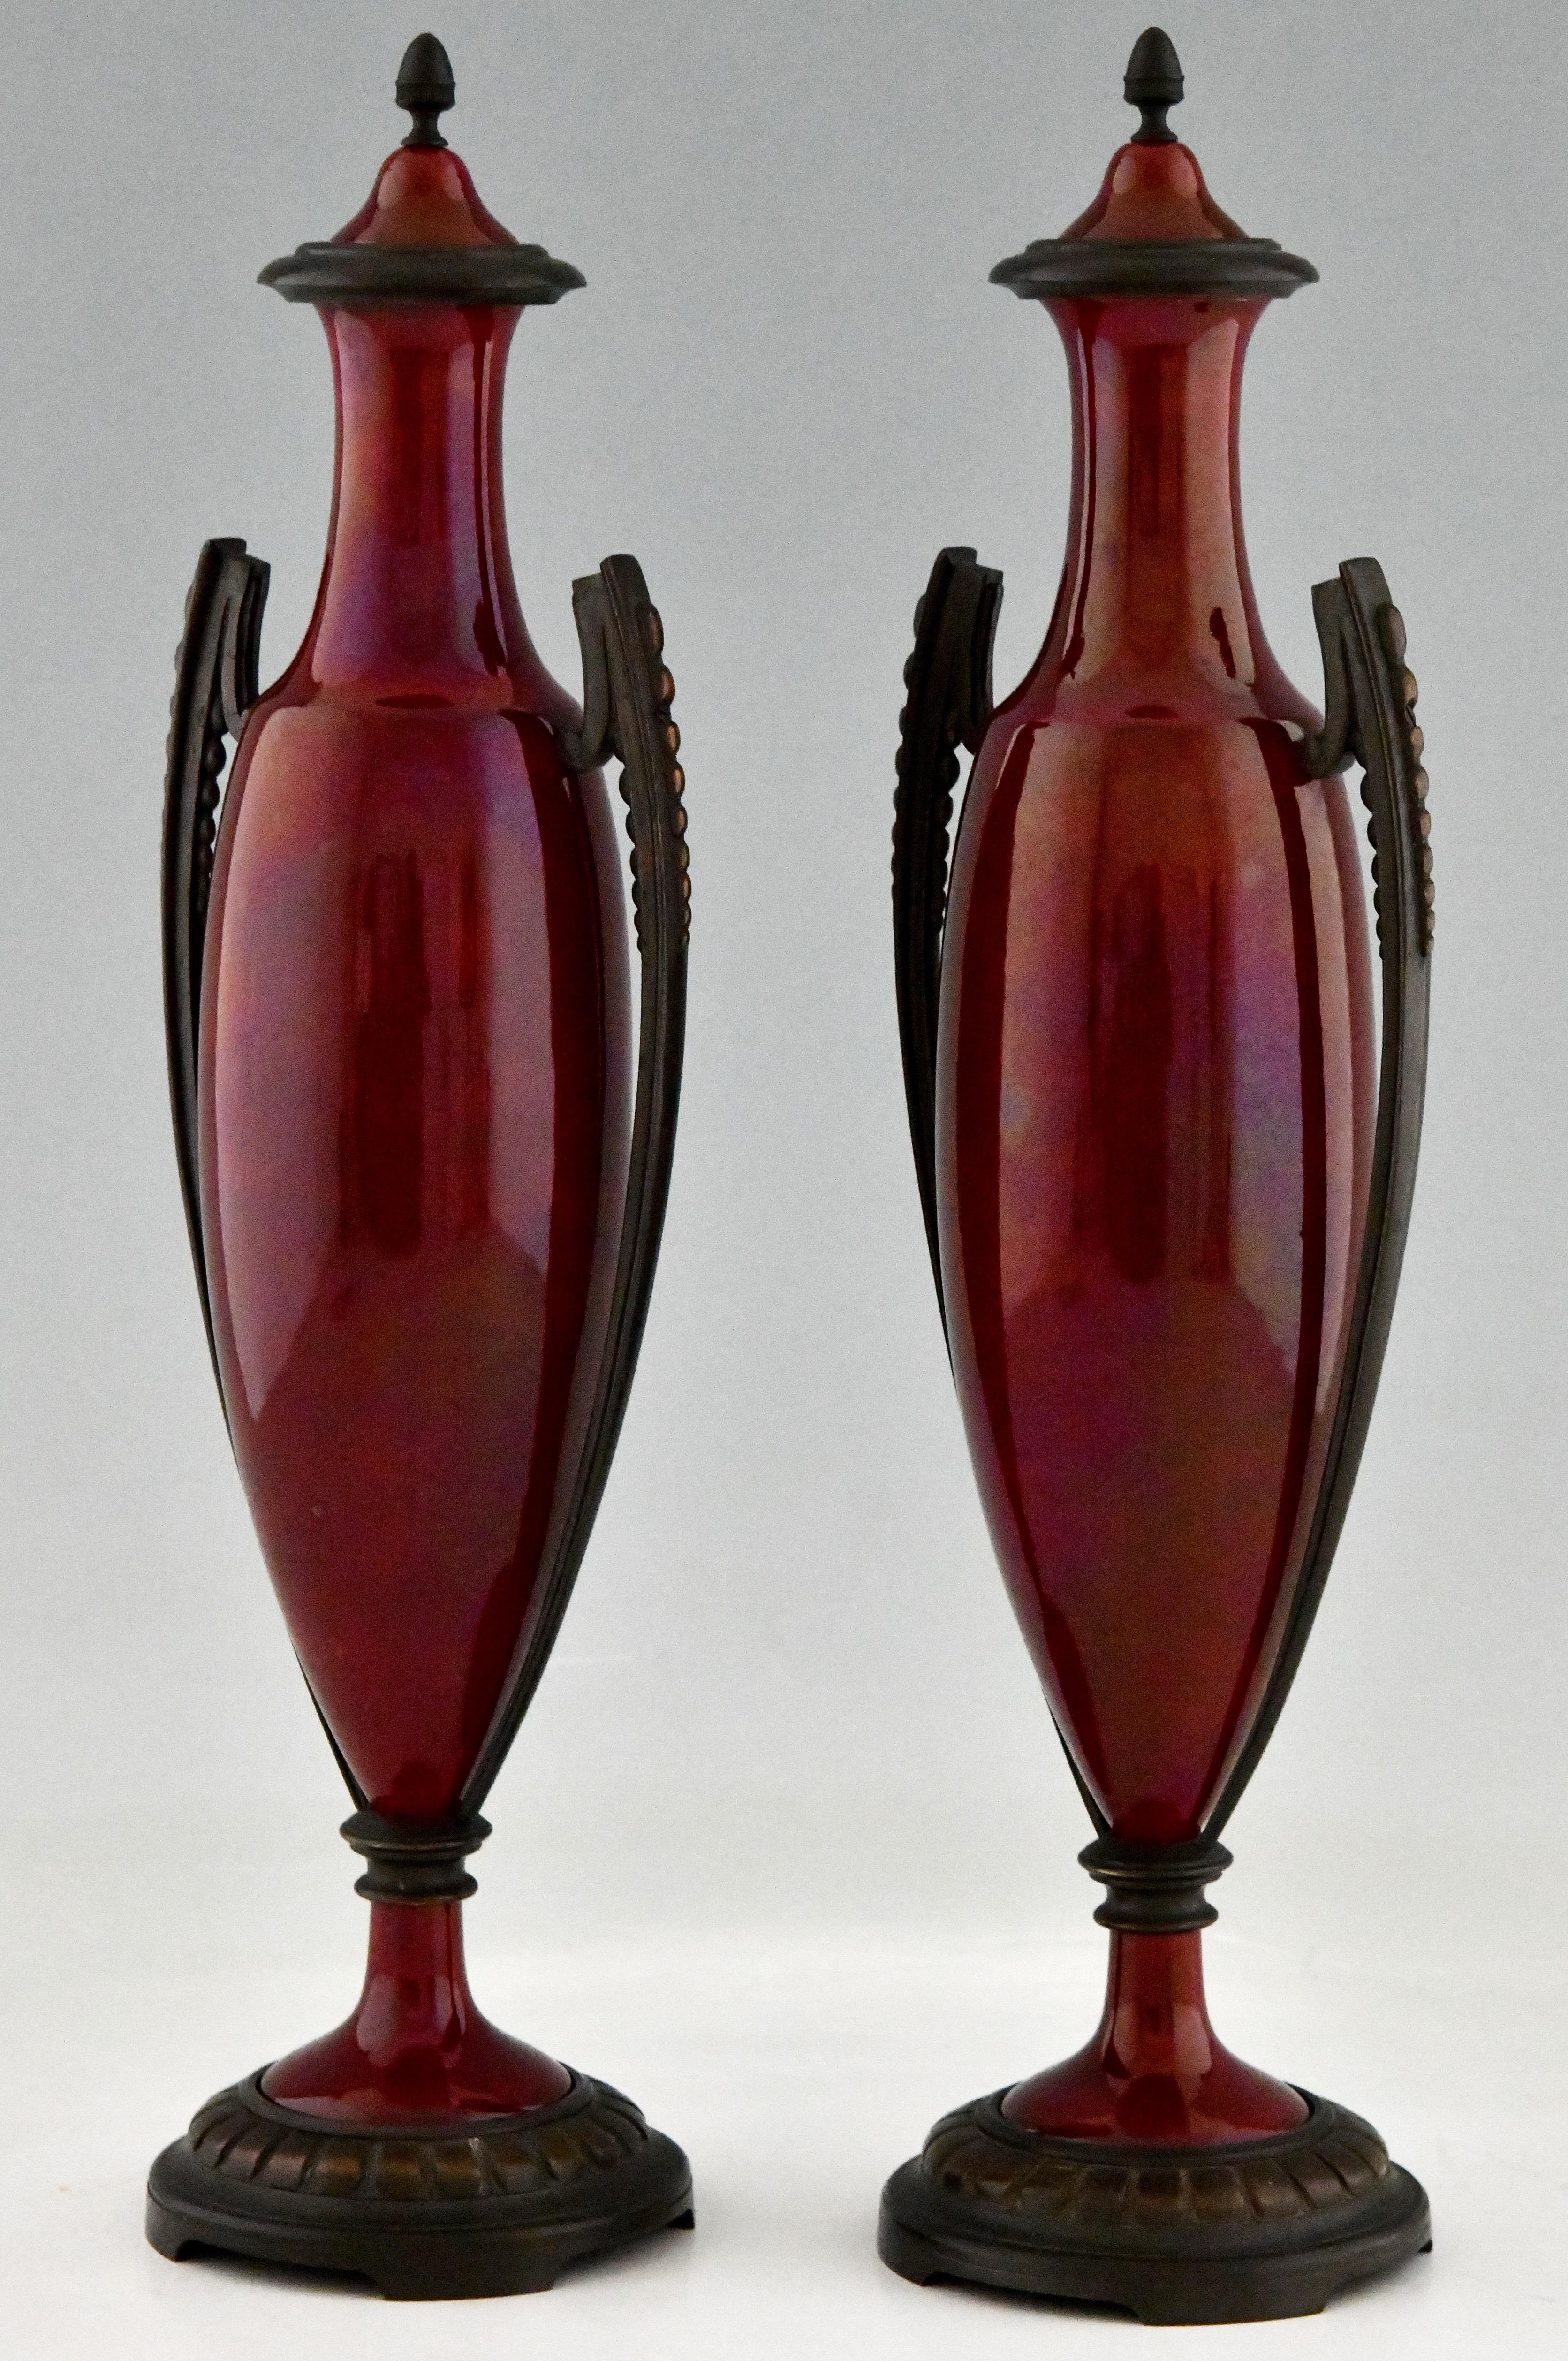 Paar französische rote Keramikvasen oder -urnen des Art déco mit dunkelroter Glasur und Bronzedekor. Paul Milet (1870-1950), Sohn von Optat Milet. Frankreich 1920.